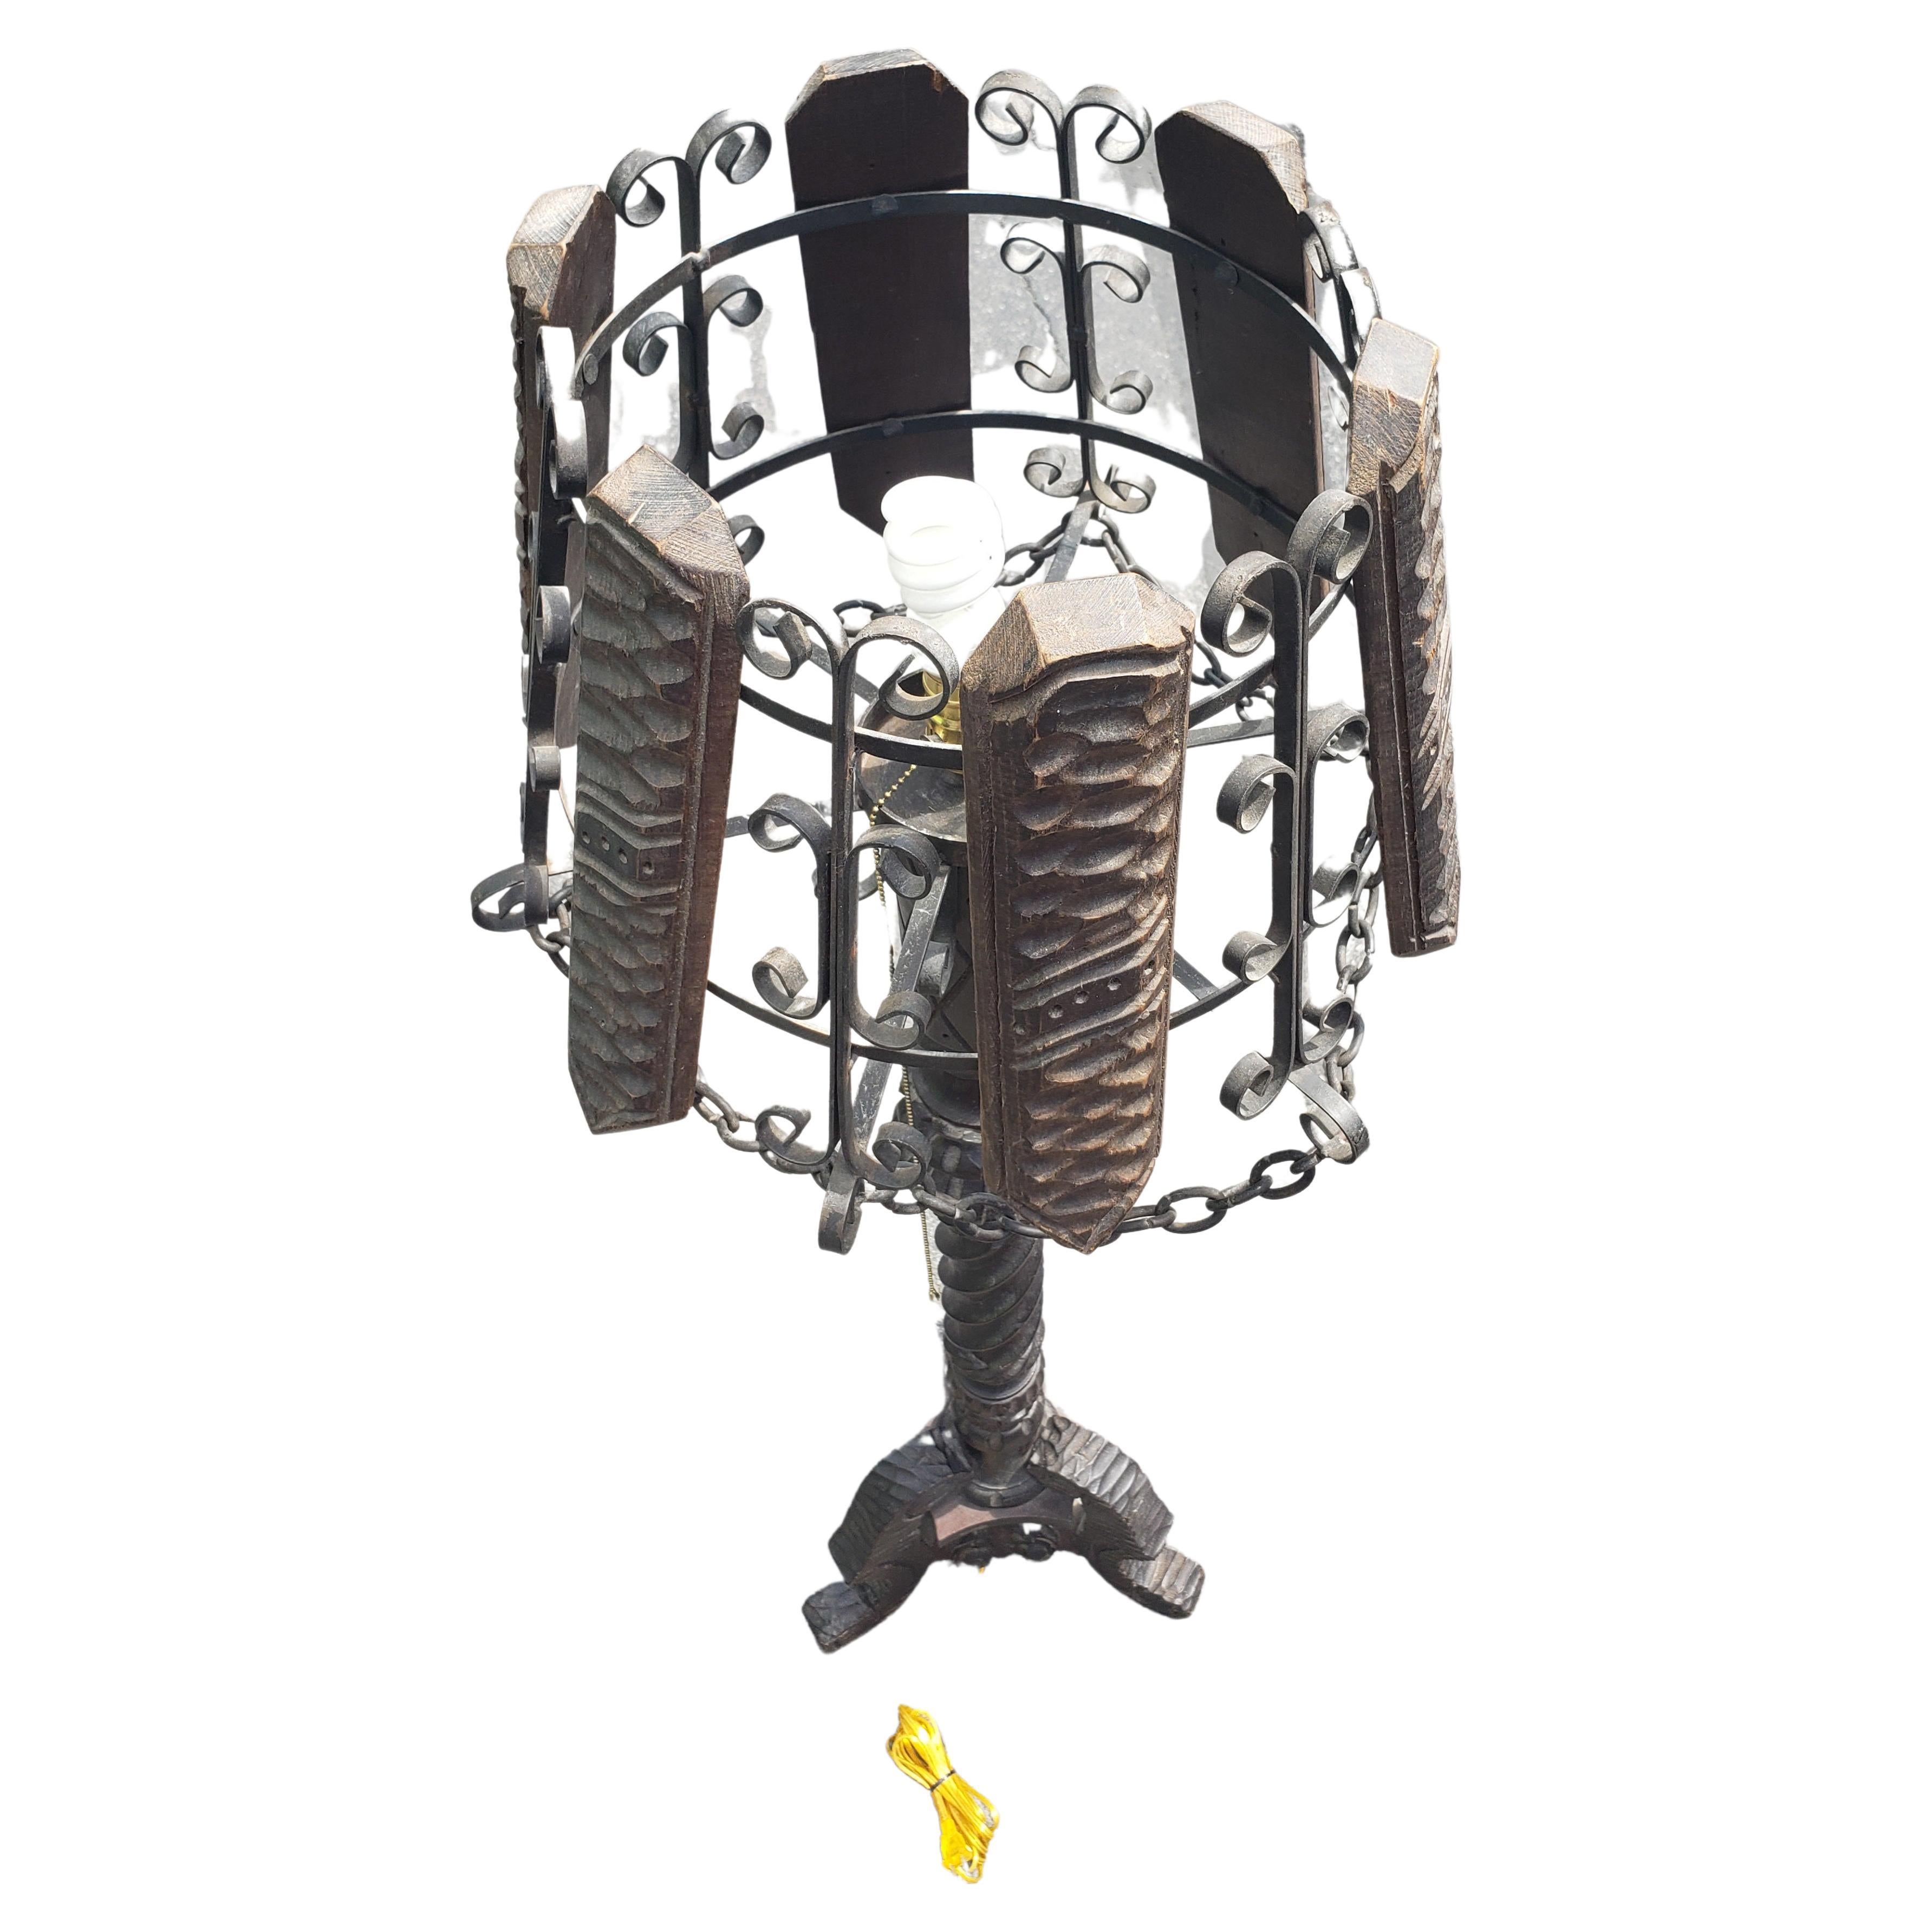 Un lampadaire à piédestal en bois sculpté vintage unique, de style Arts et Artisanat. La colonne sculptée et ébénisée est soutenue par des pieds tripodes. Lamelles en bois et abat-jour en fer agrémentés d'une chaîne de suspension. L'abat-jour est